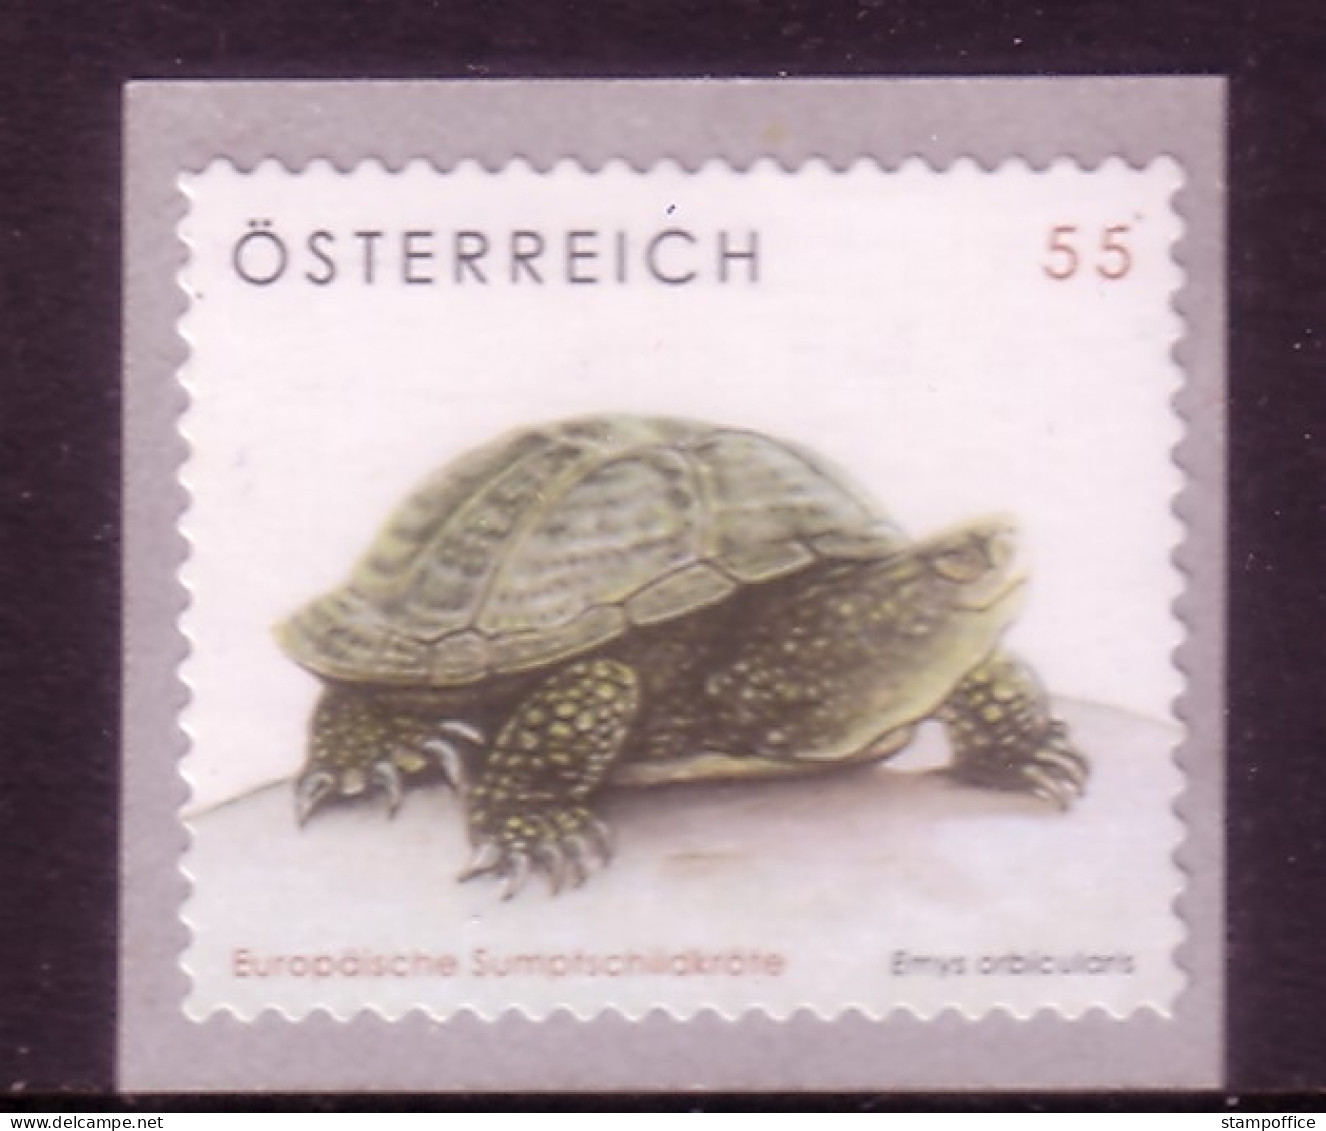 ÖSTERREICH MI-NR. 2624 POSTFRISCH(MINT) SCHILDKRÖTE 2006 - Schildkröten